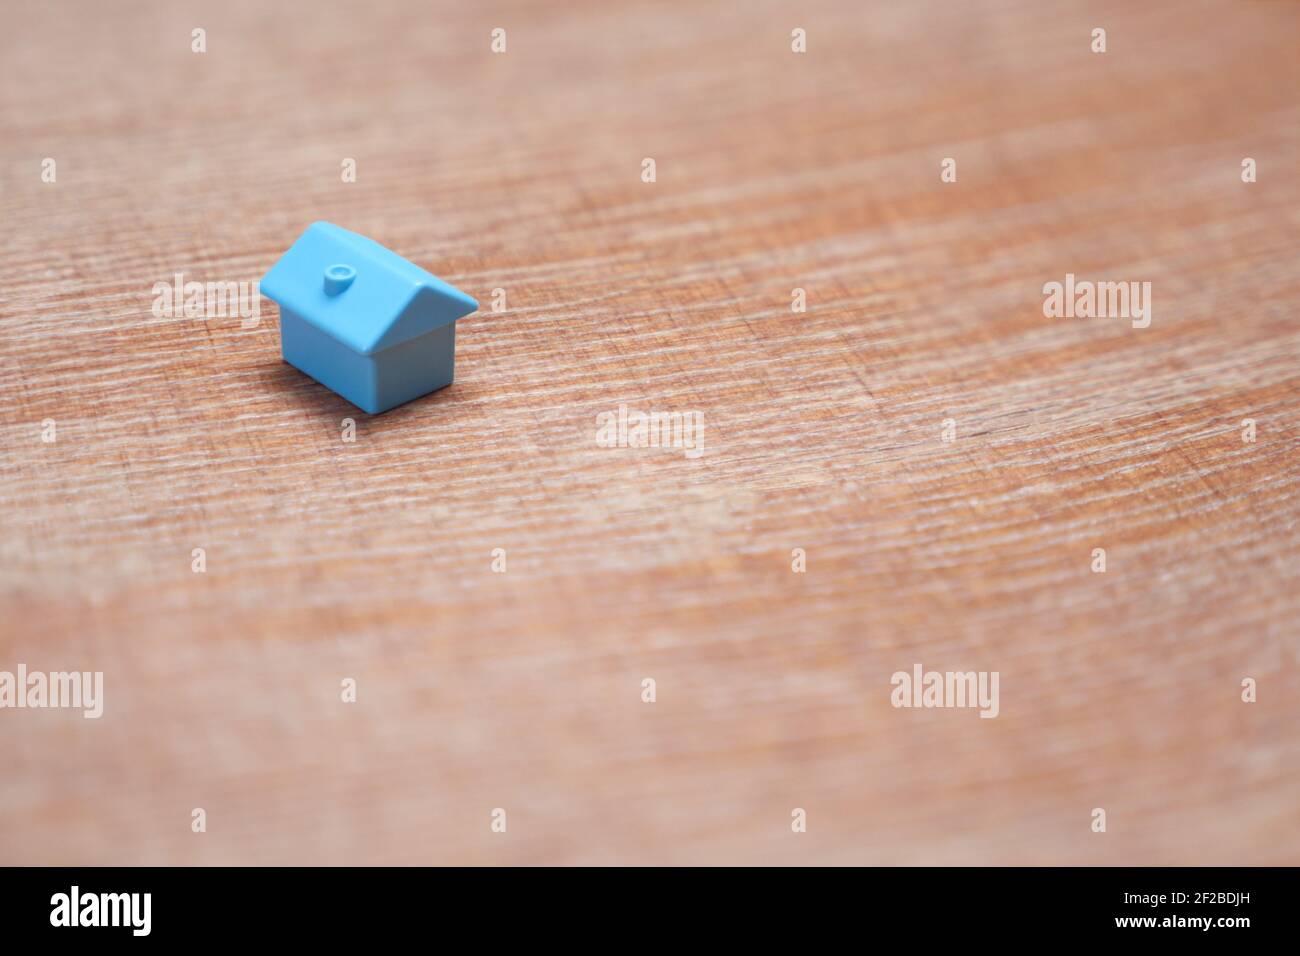 Conception minimale une seule maison miniature avec espace de copie. Blue toy maison marché immobilier prêt hypothécaire. Symbole de maison sur fond de bois Banque D'Images